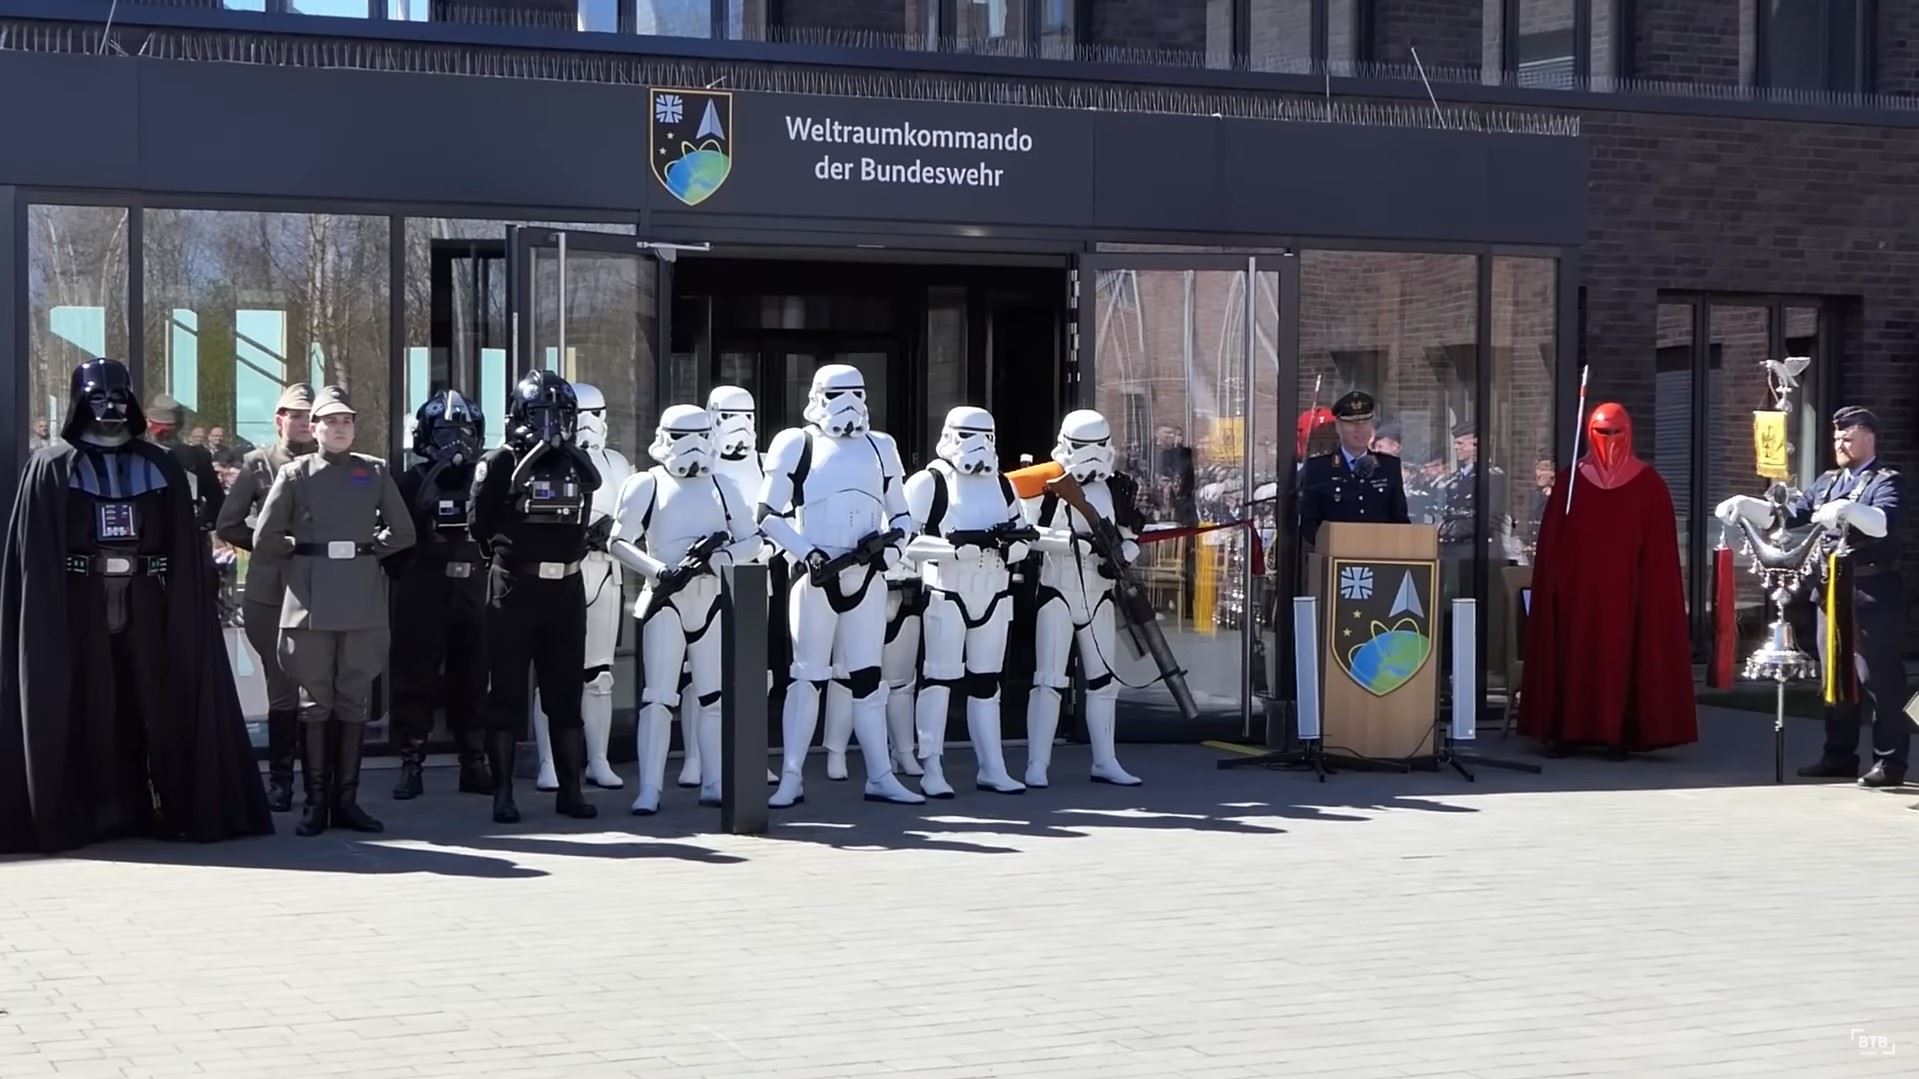 Персонажи из "Звёздных войн" на церемонии инаугурации Космического командования Бундесвера в Удеме, Германия, 3 апреля 2023 г.